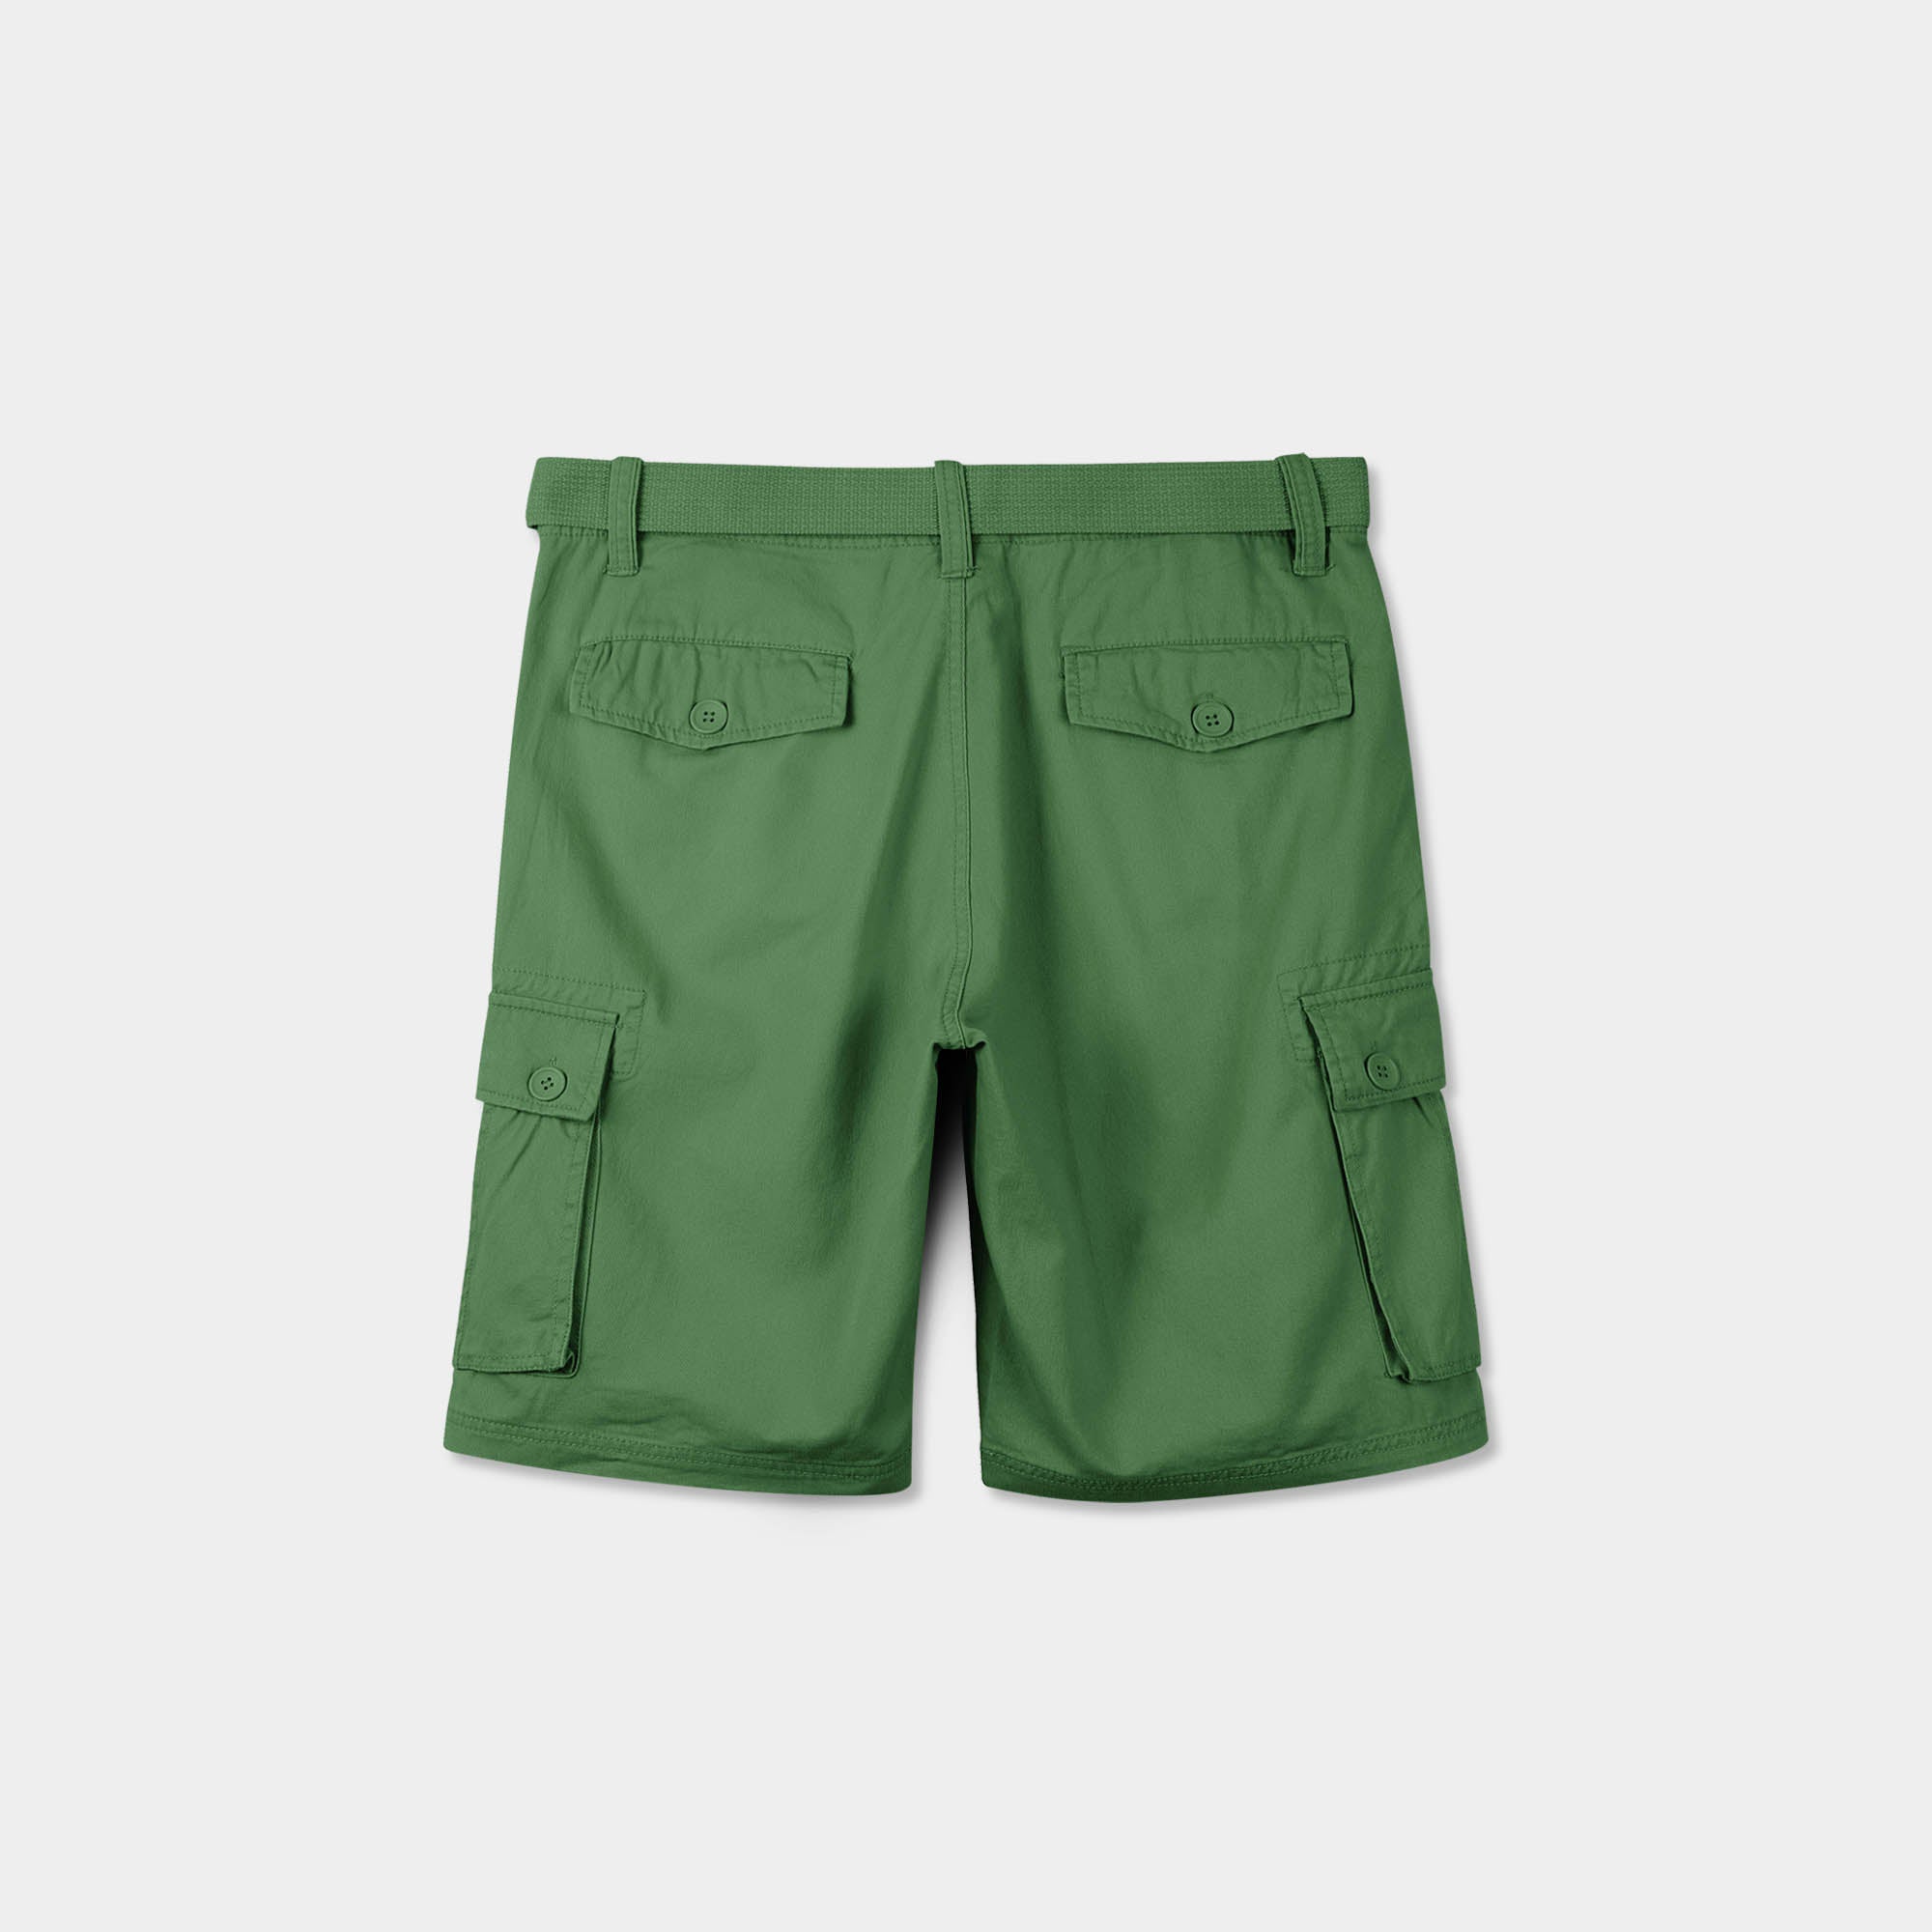 cargo shorts_mens cargo shorts_men's cargo shorts_wrangler cargo shorts_boys cargo shorts_unionbay cargo shorts_old navy cargo shorts_Green